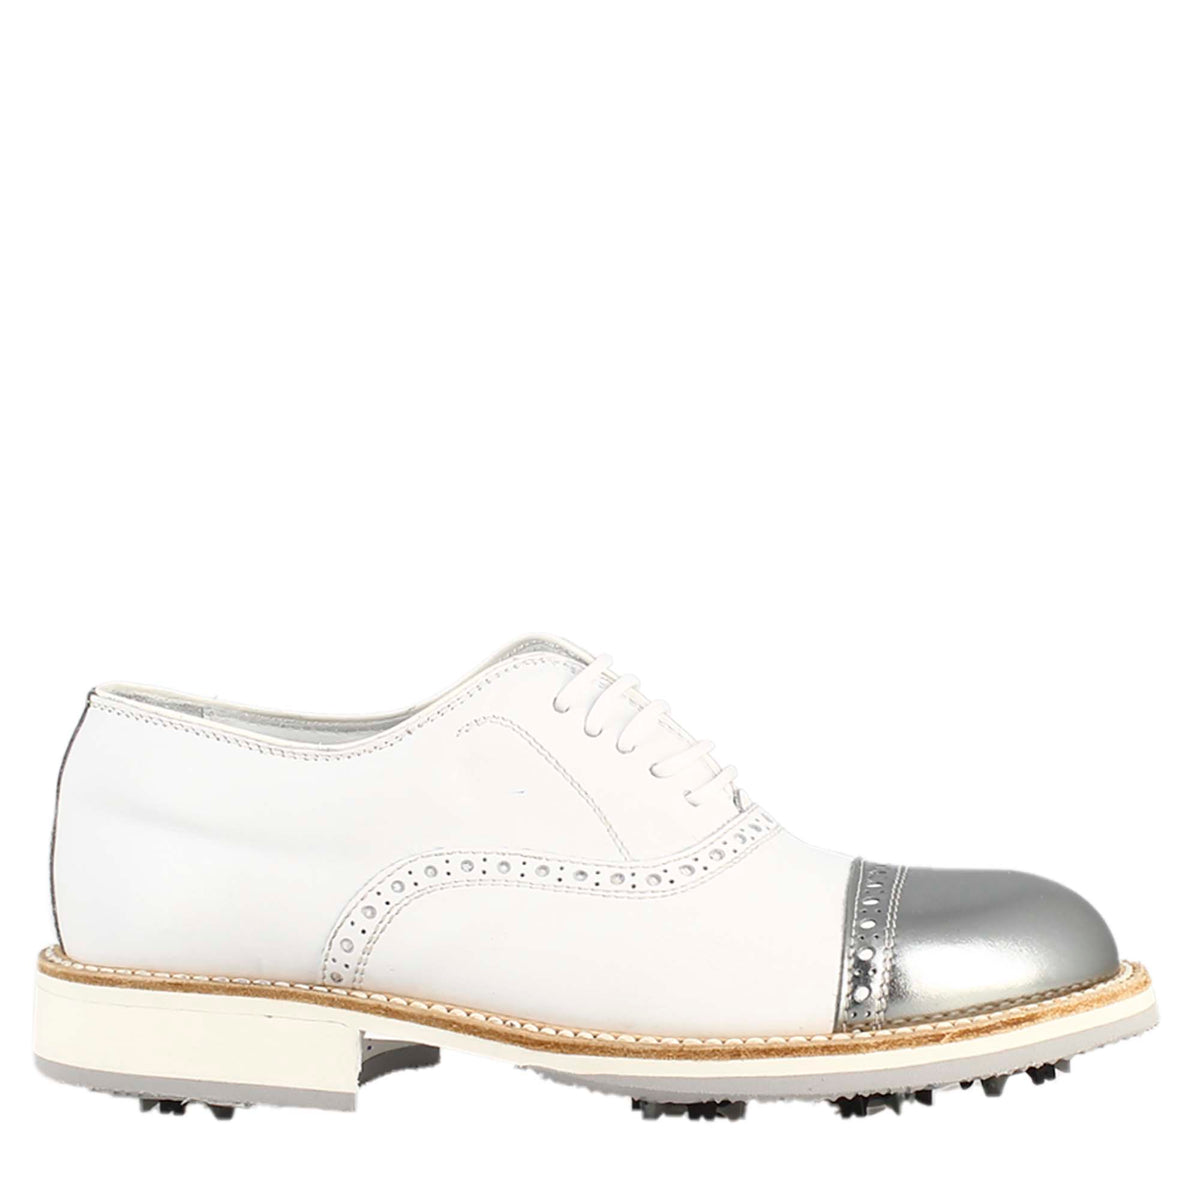 Scarpe golf da uomo artigianali in pelle bianco e dettagli in argento